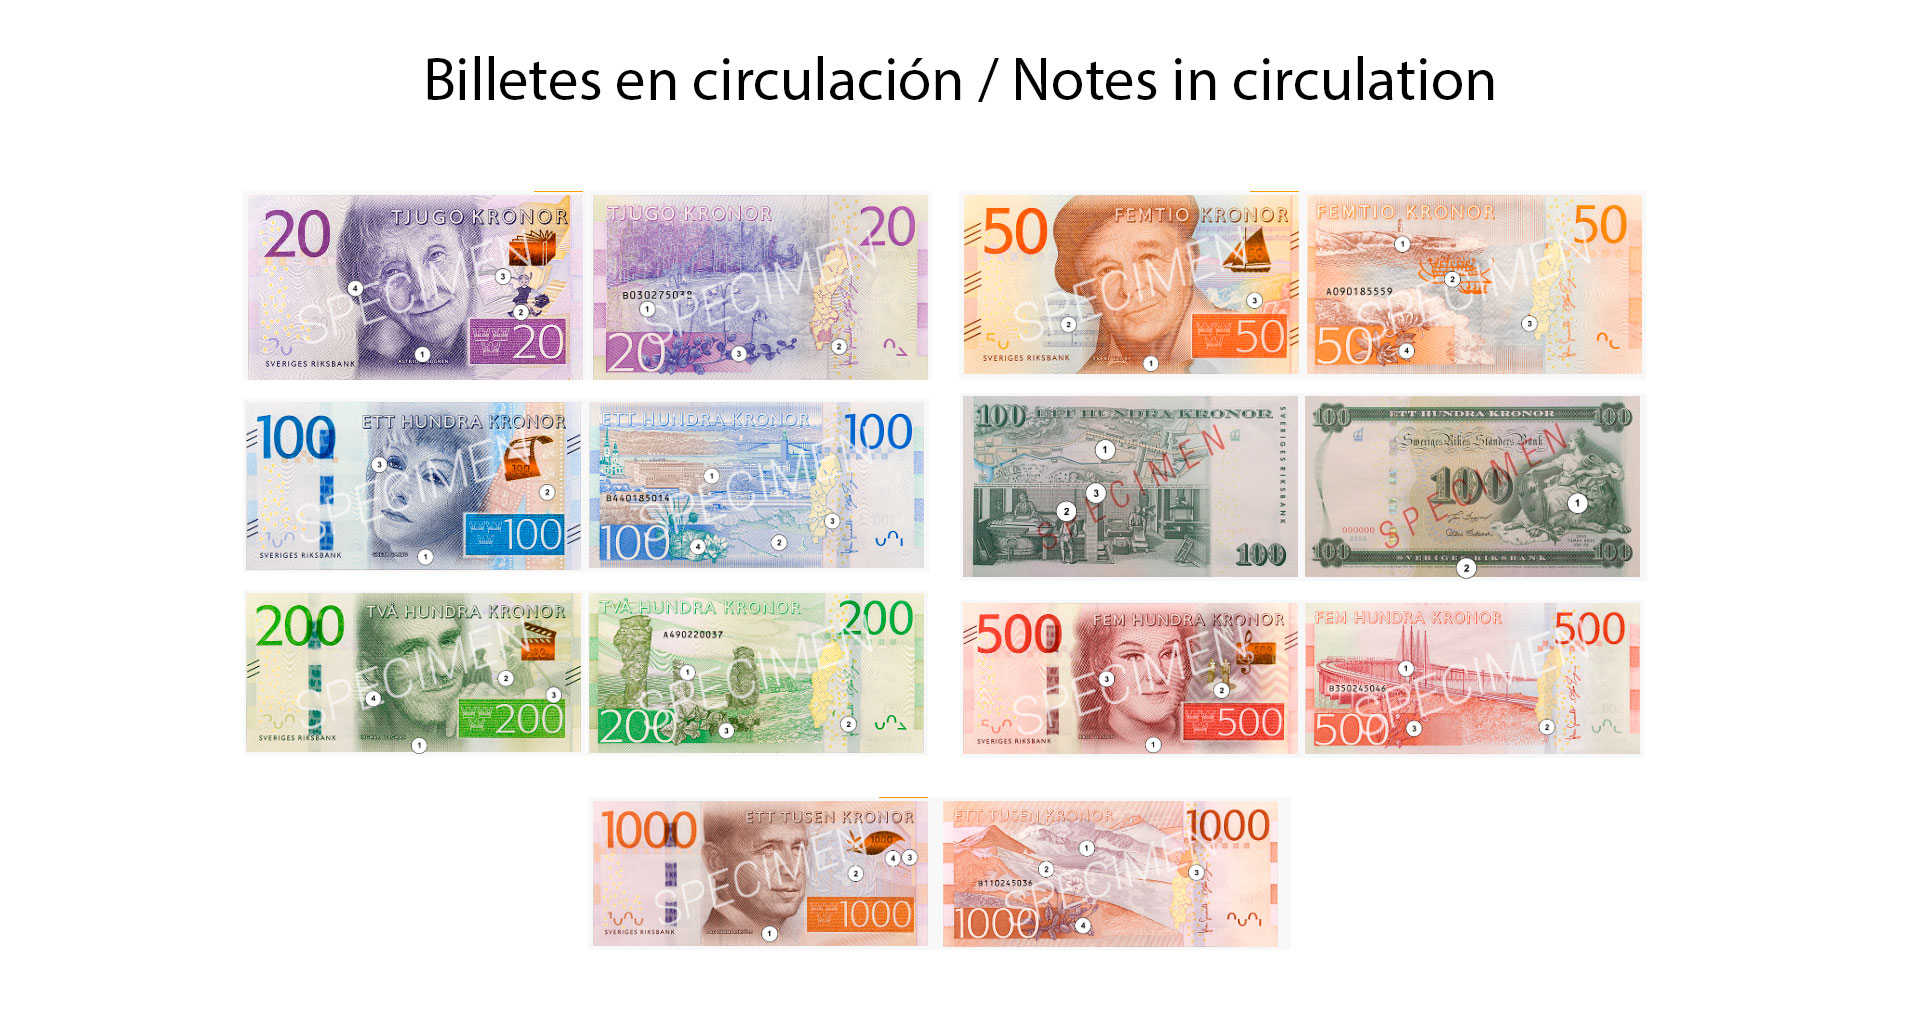 Sek euro exchange rate history